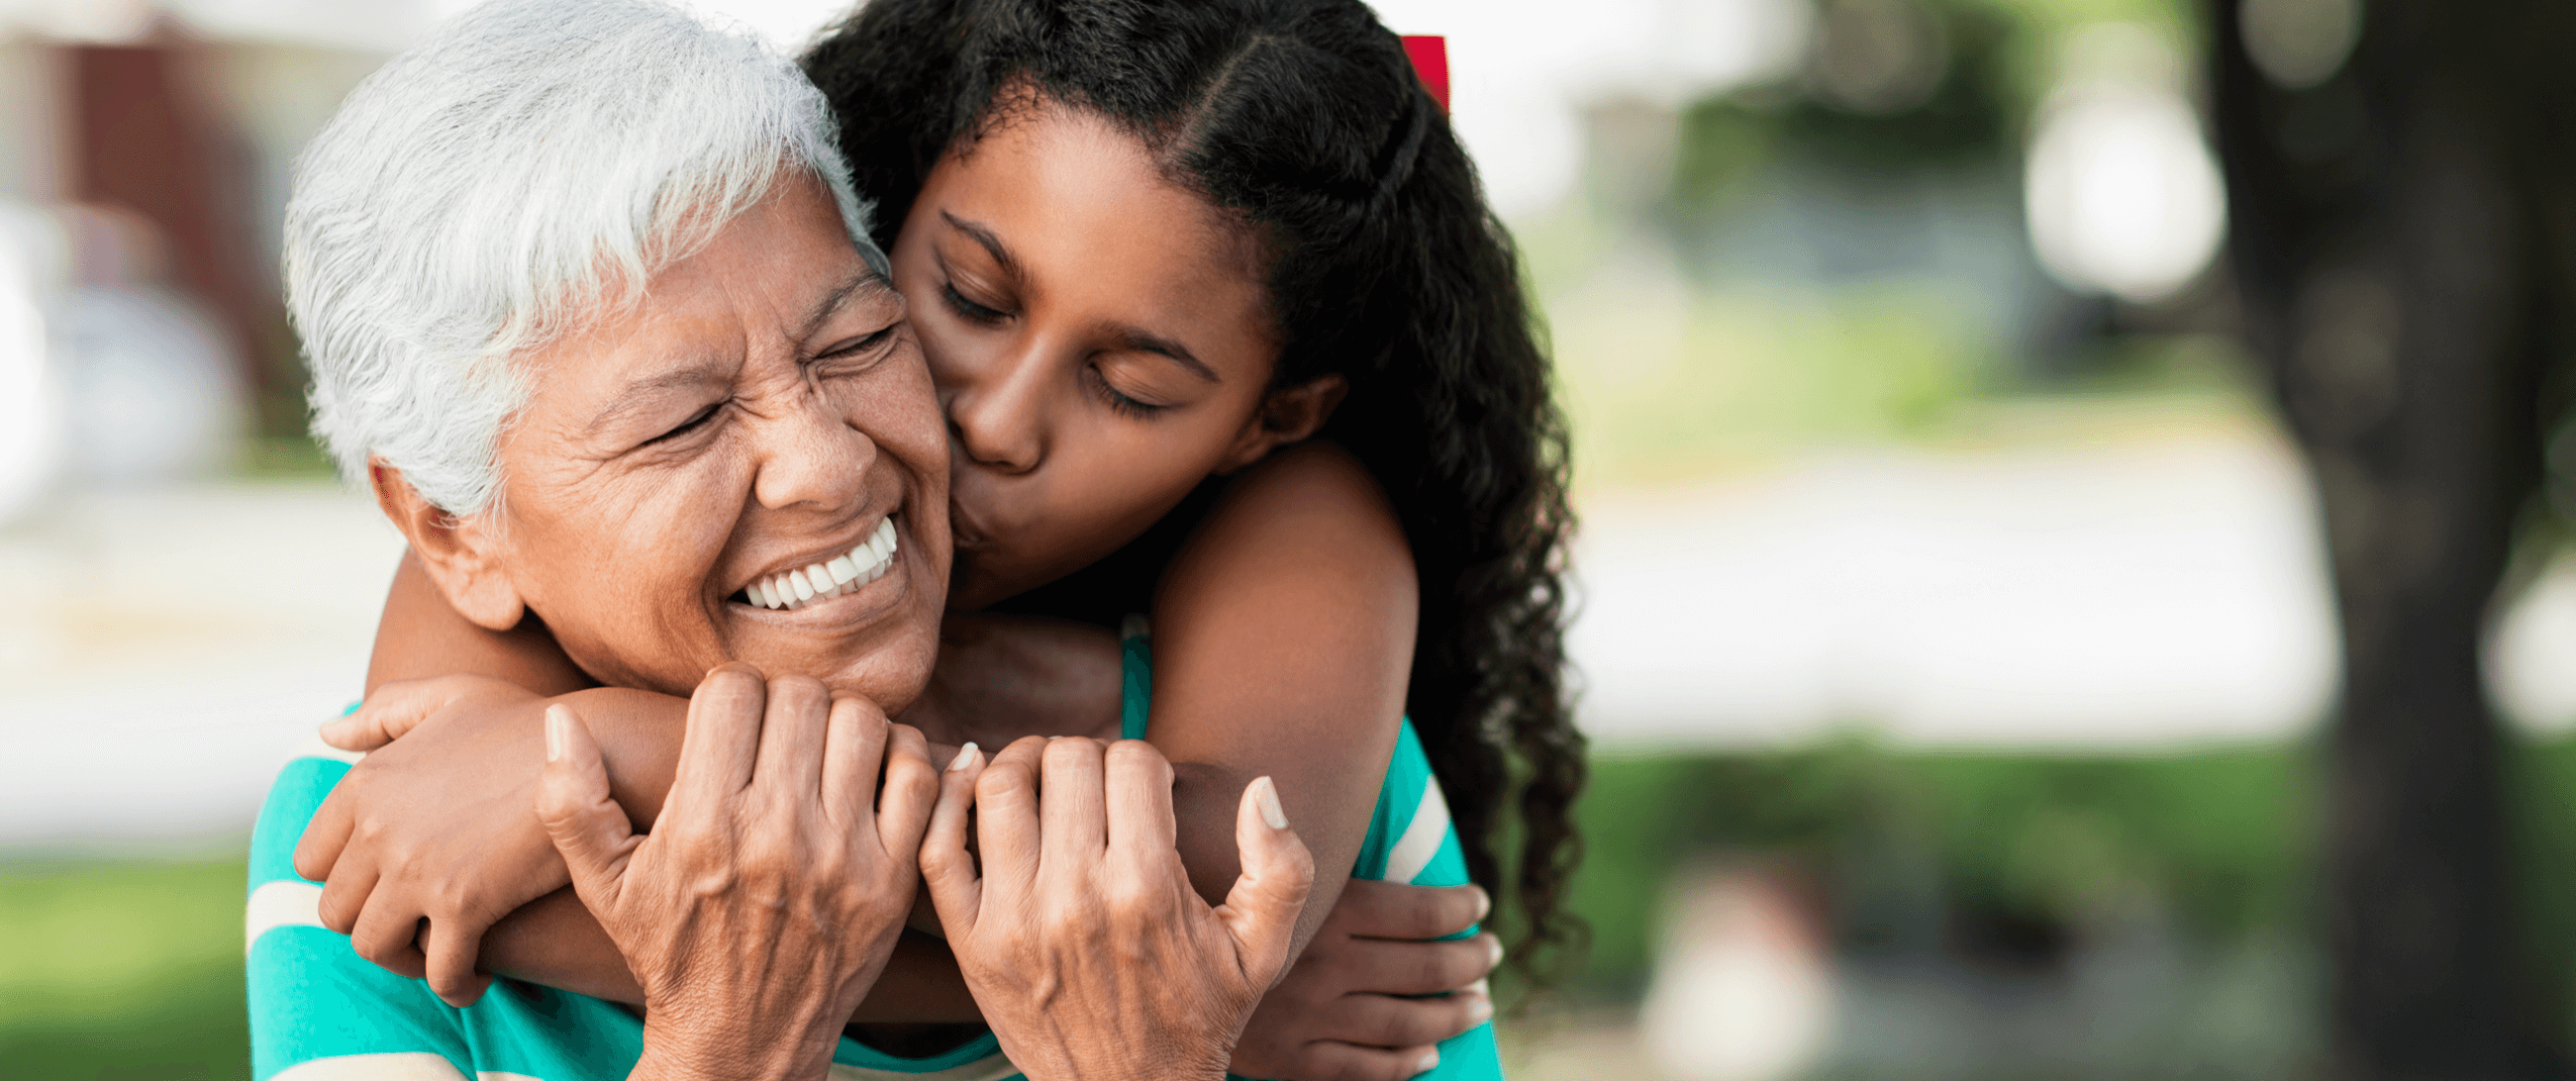 granddaughter hugging her grandma